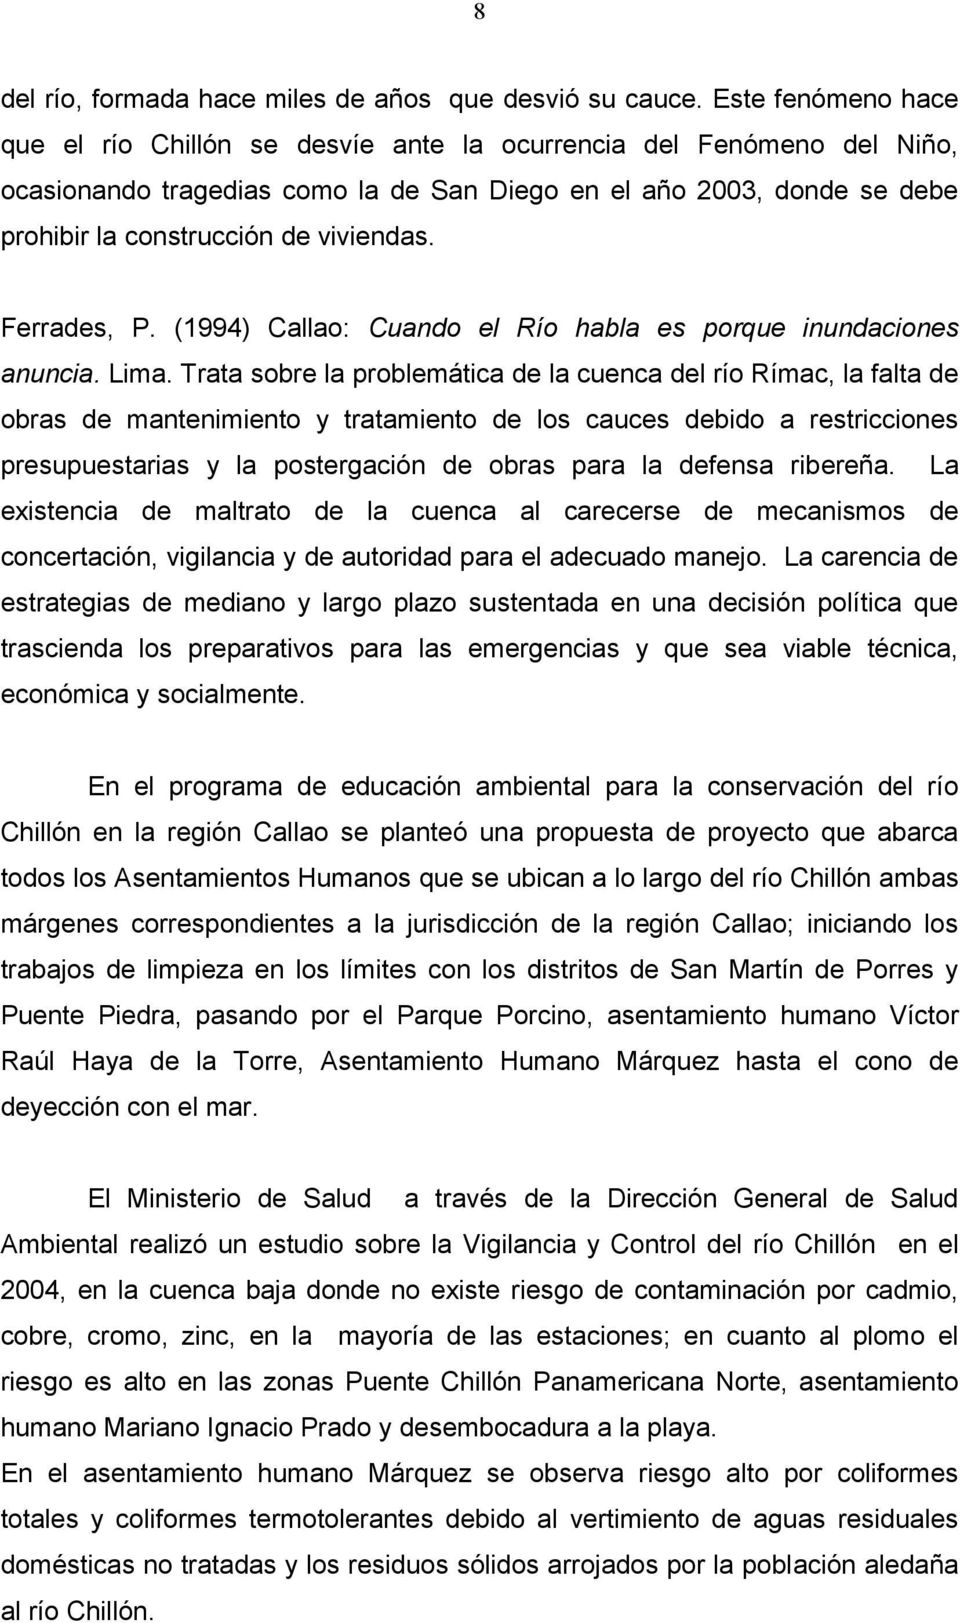 viviendas. Ferrades, P. (1994) Callao: Cuando el Río habla es porque inundaciones anuncia. Lima.